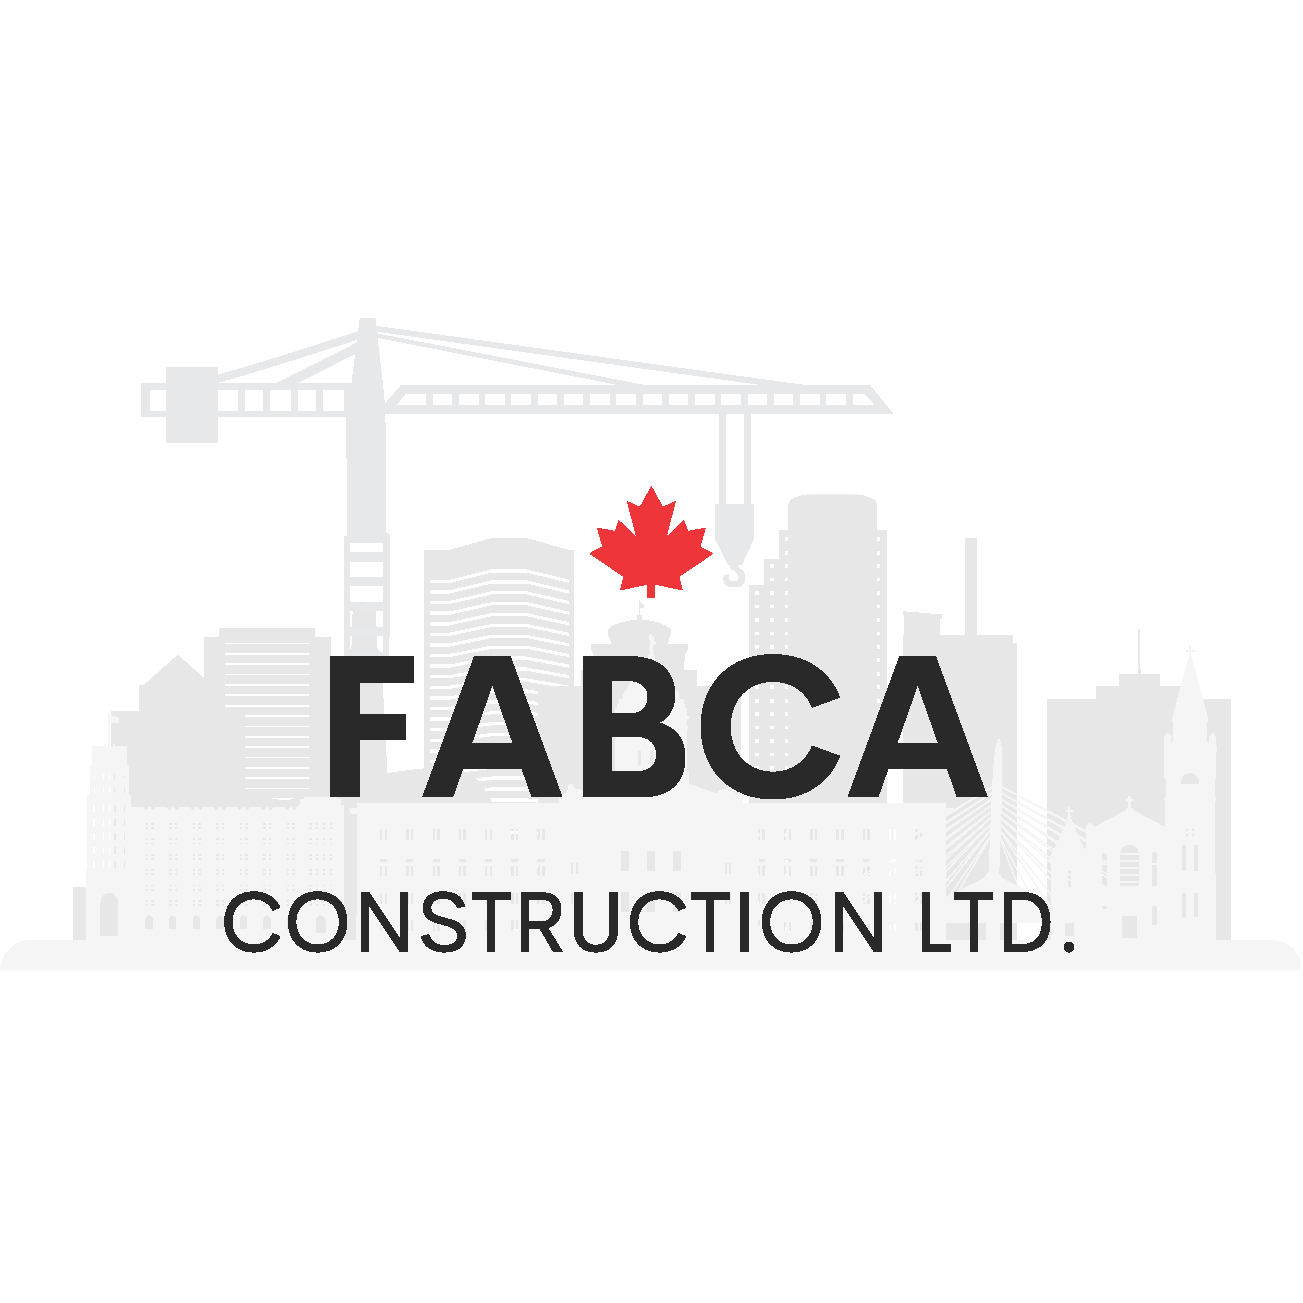 New Fabca Logo 2020 Vector